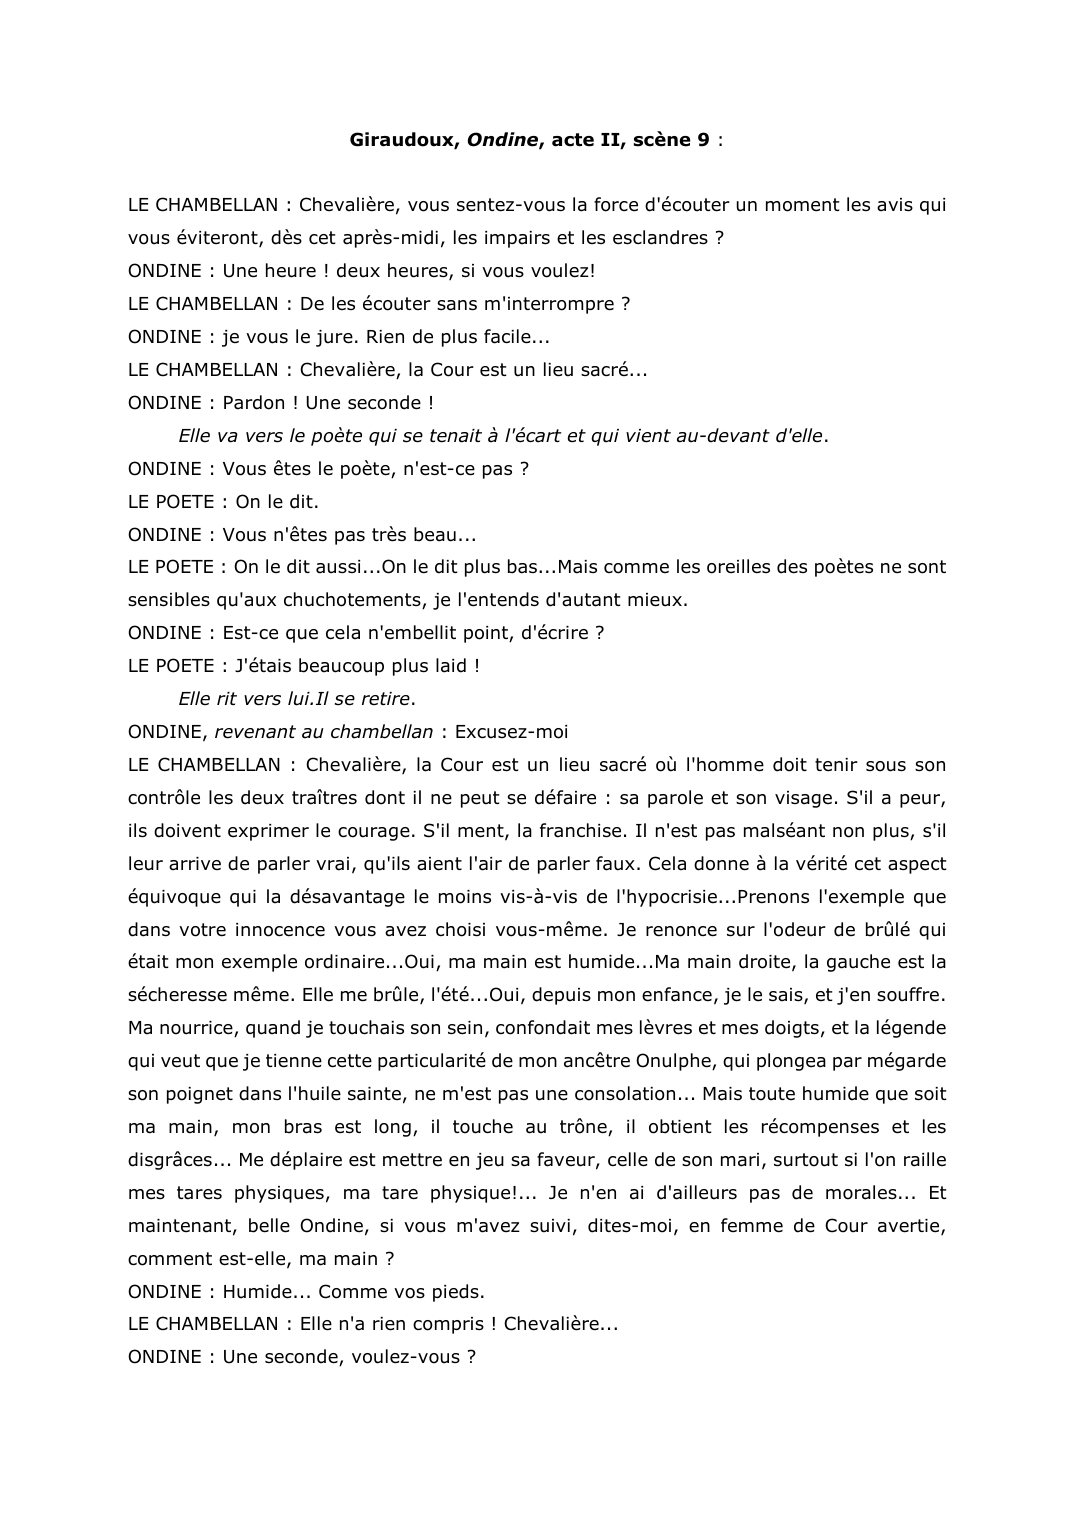 Prévisualisation du document Giraudoux, Ondine, acte II, scène 9. Commentaire